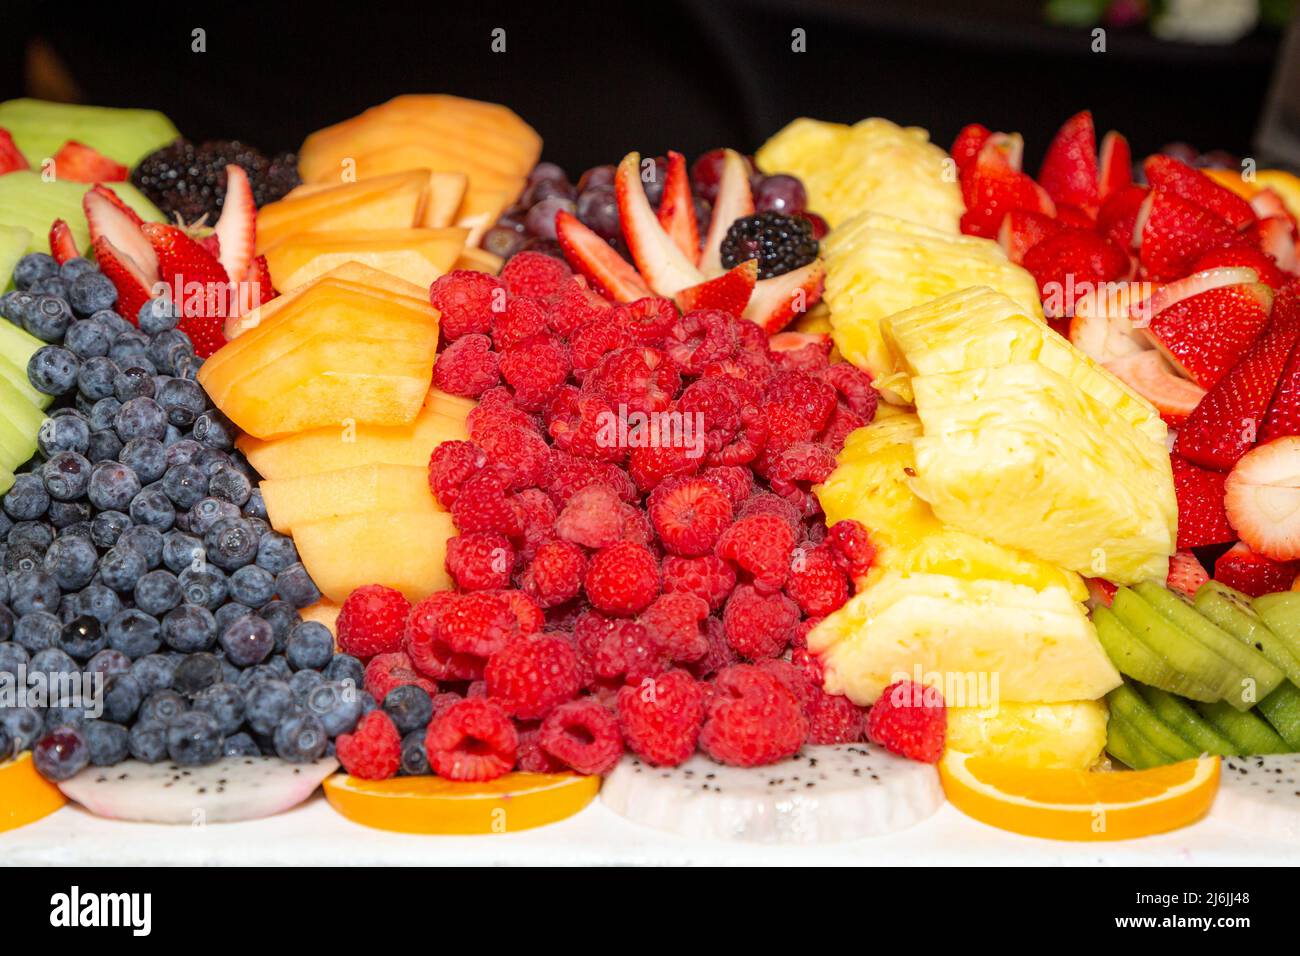 Farbenfrohe Früchte, in Scheiben geschnitten und am Mittagsbuffet serviert Stockfoto